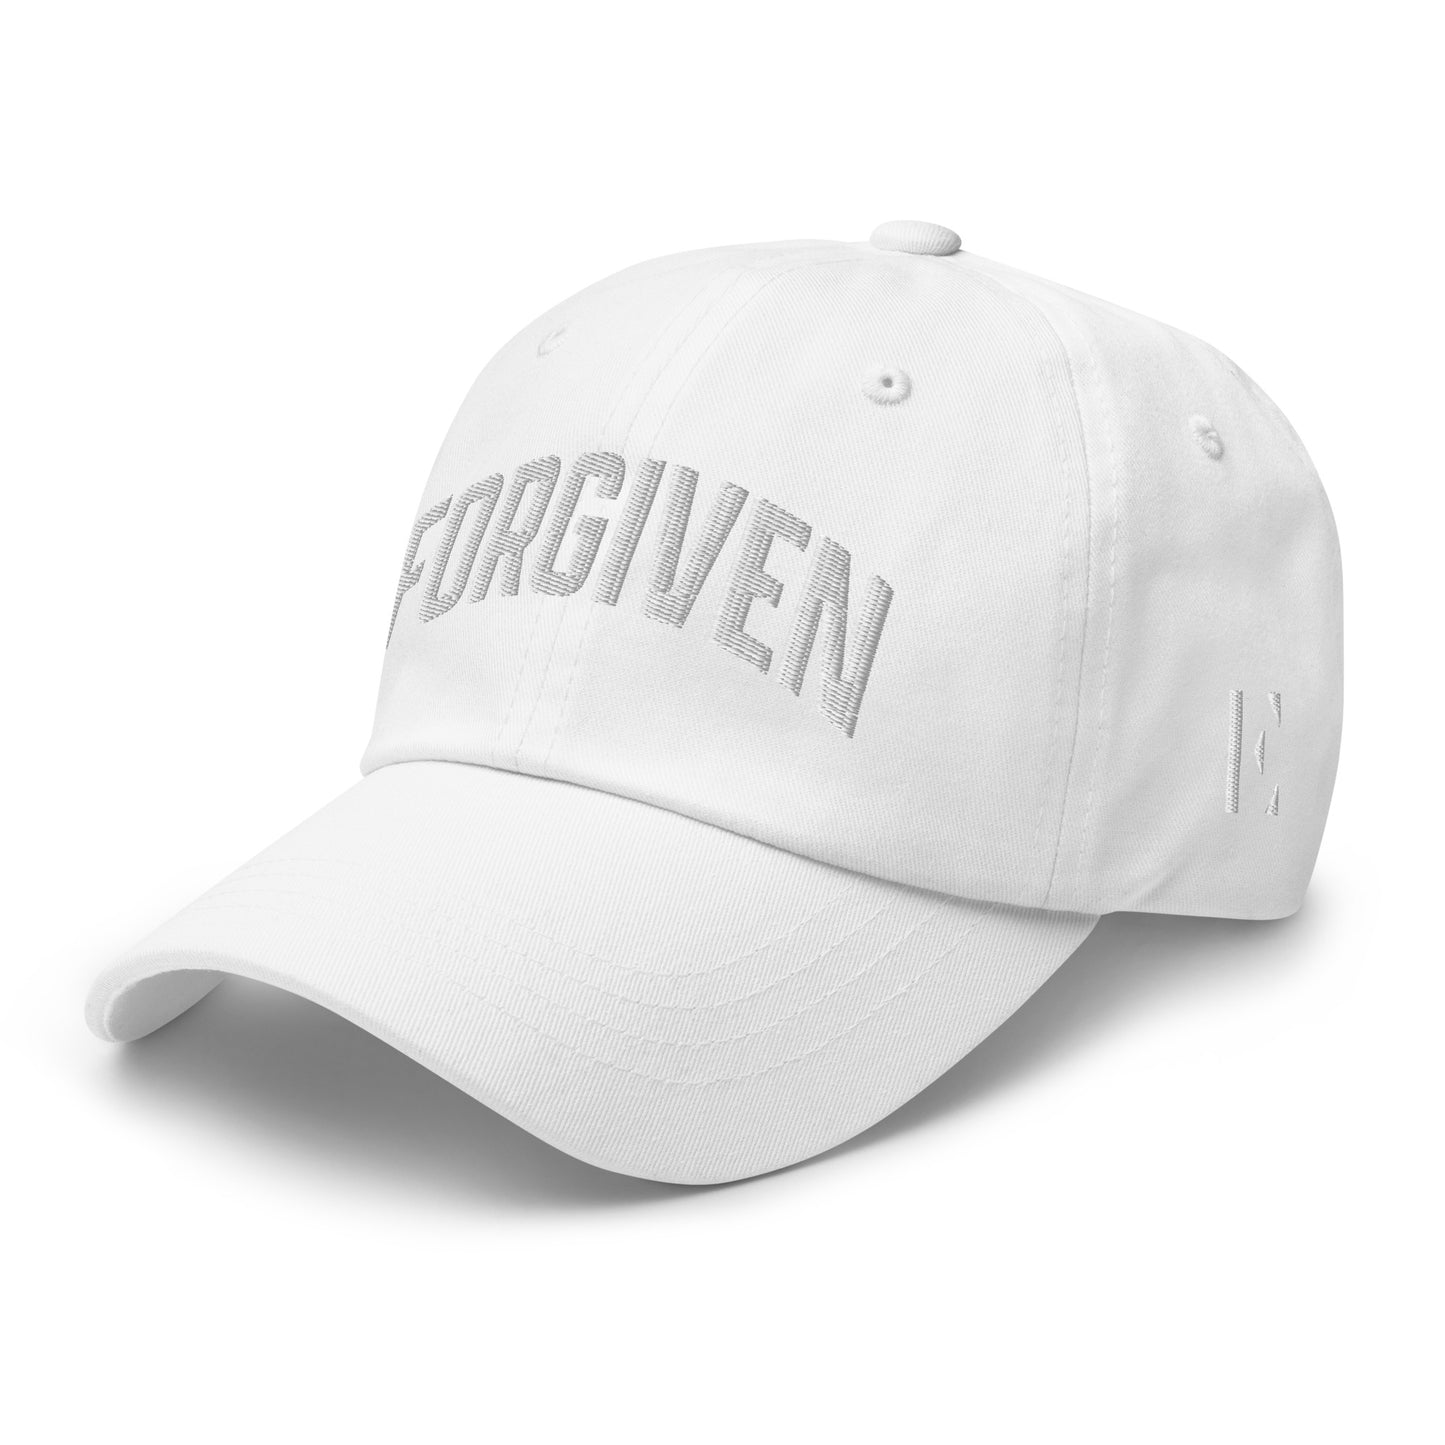 FORGIVEN Embroidered Dad hat V1